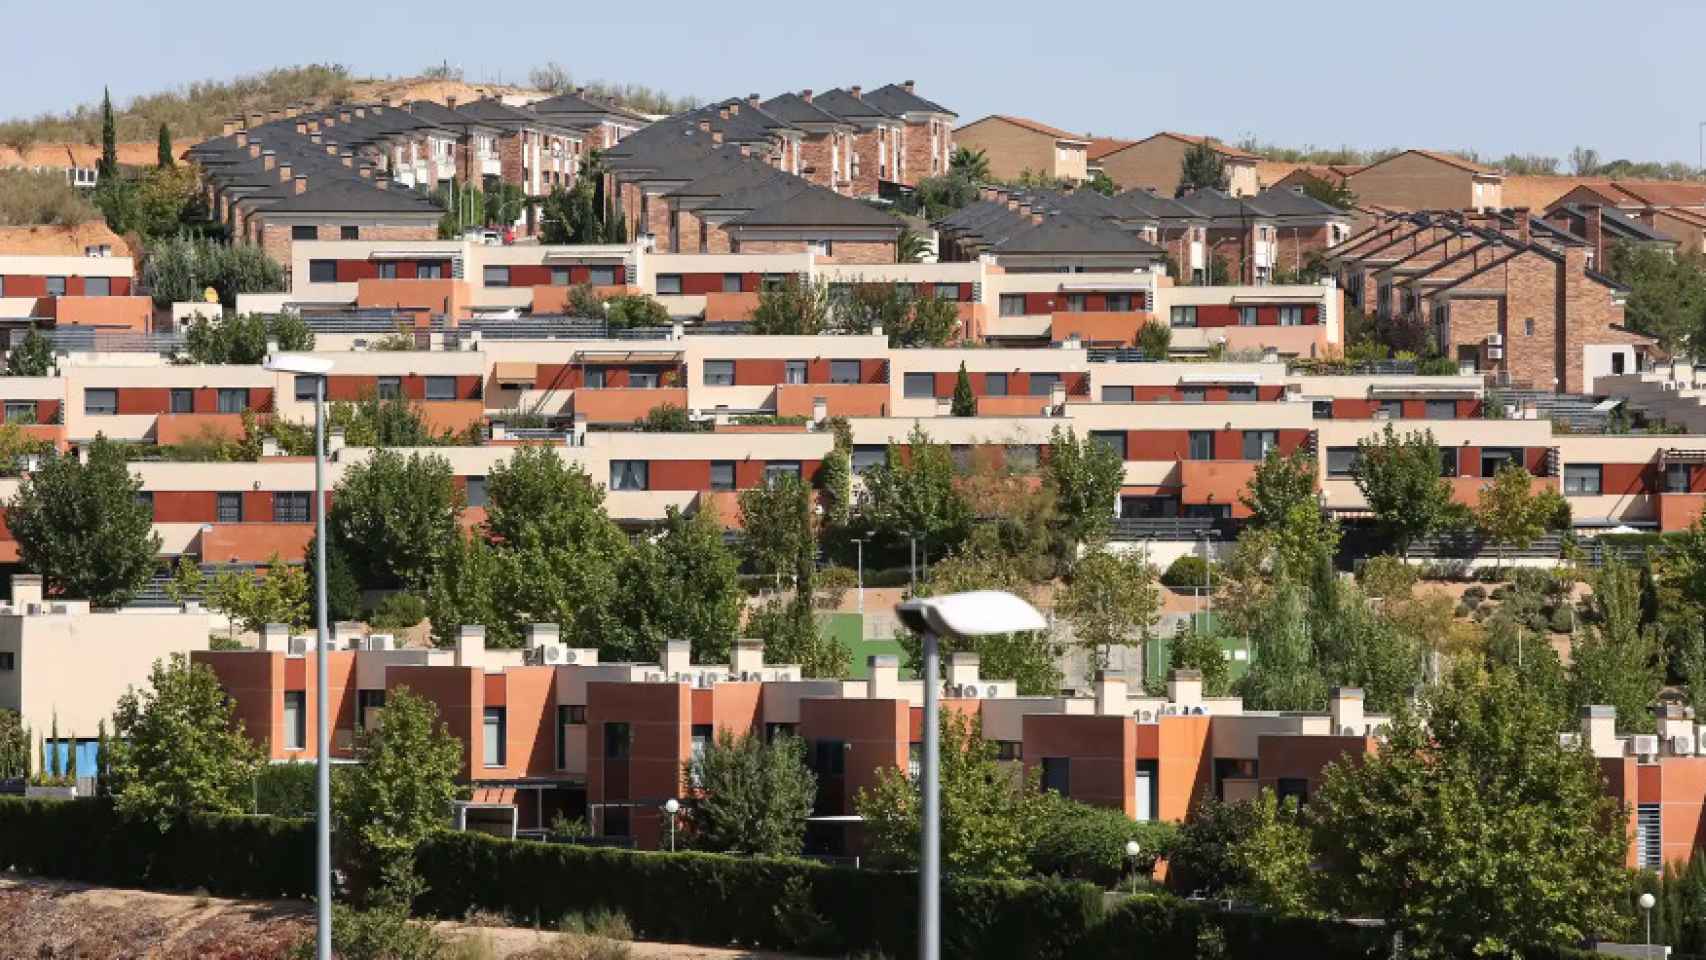 Viviendas unifamiliares en el barrio de Valparaíso de Toledo.